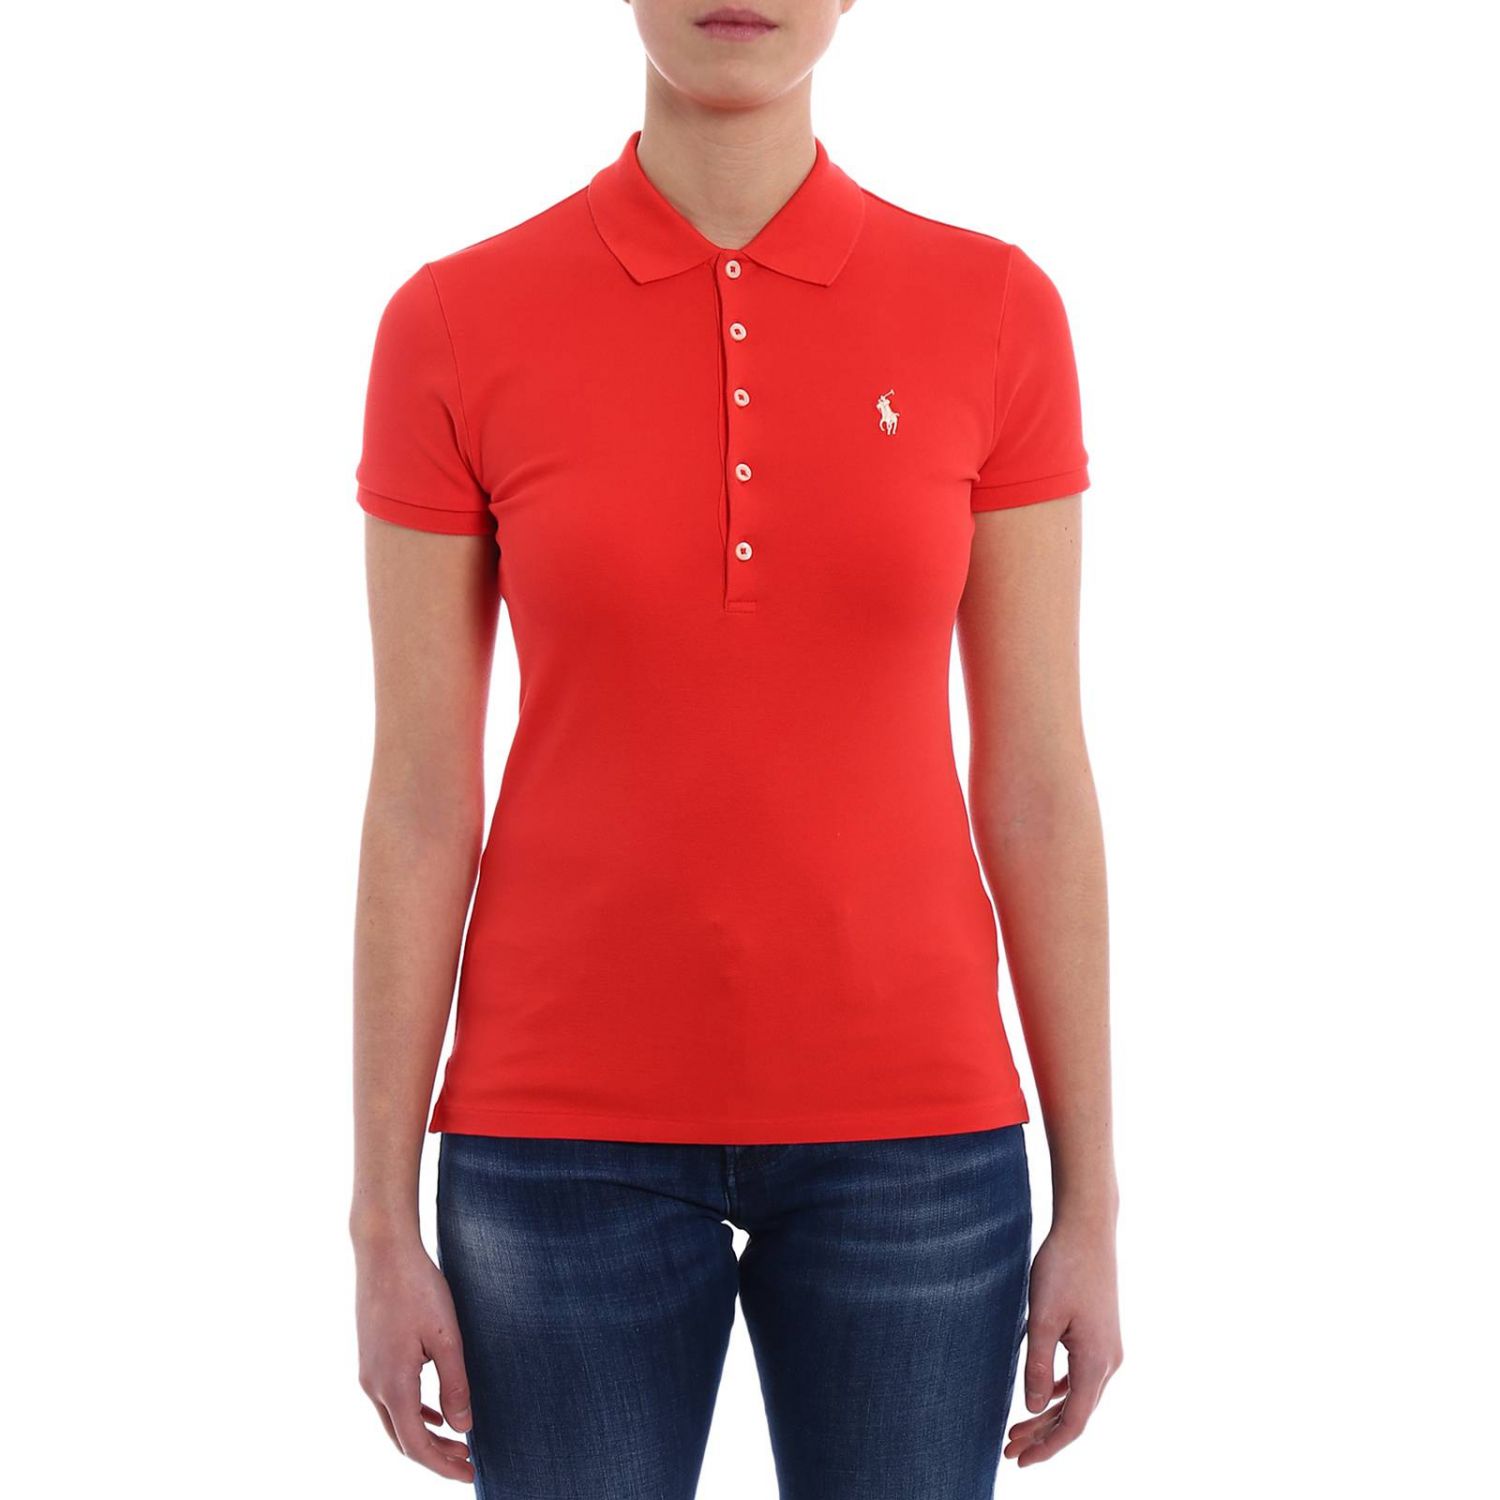 Polo Ralph Lauren Outlet: T-shirt women - Burgundy | T-Shirt Polo Ralph ...